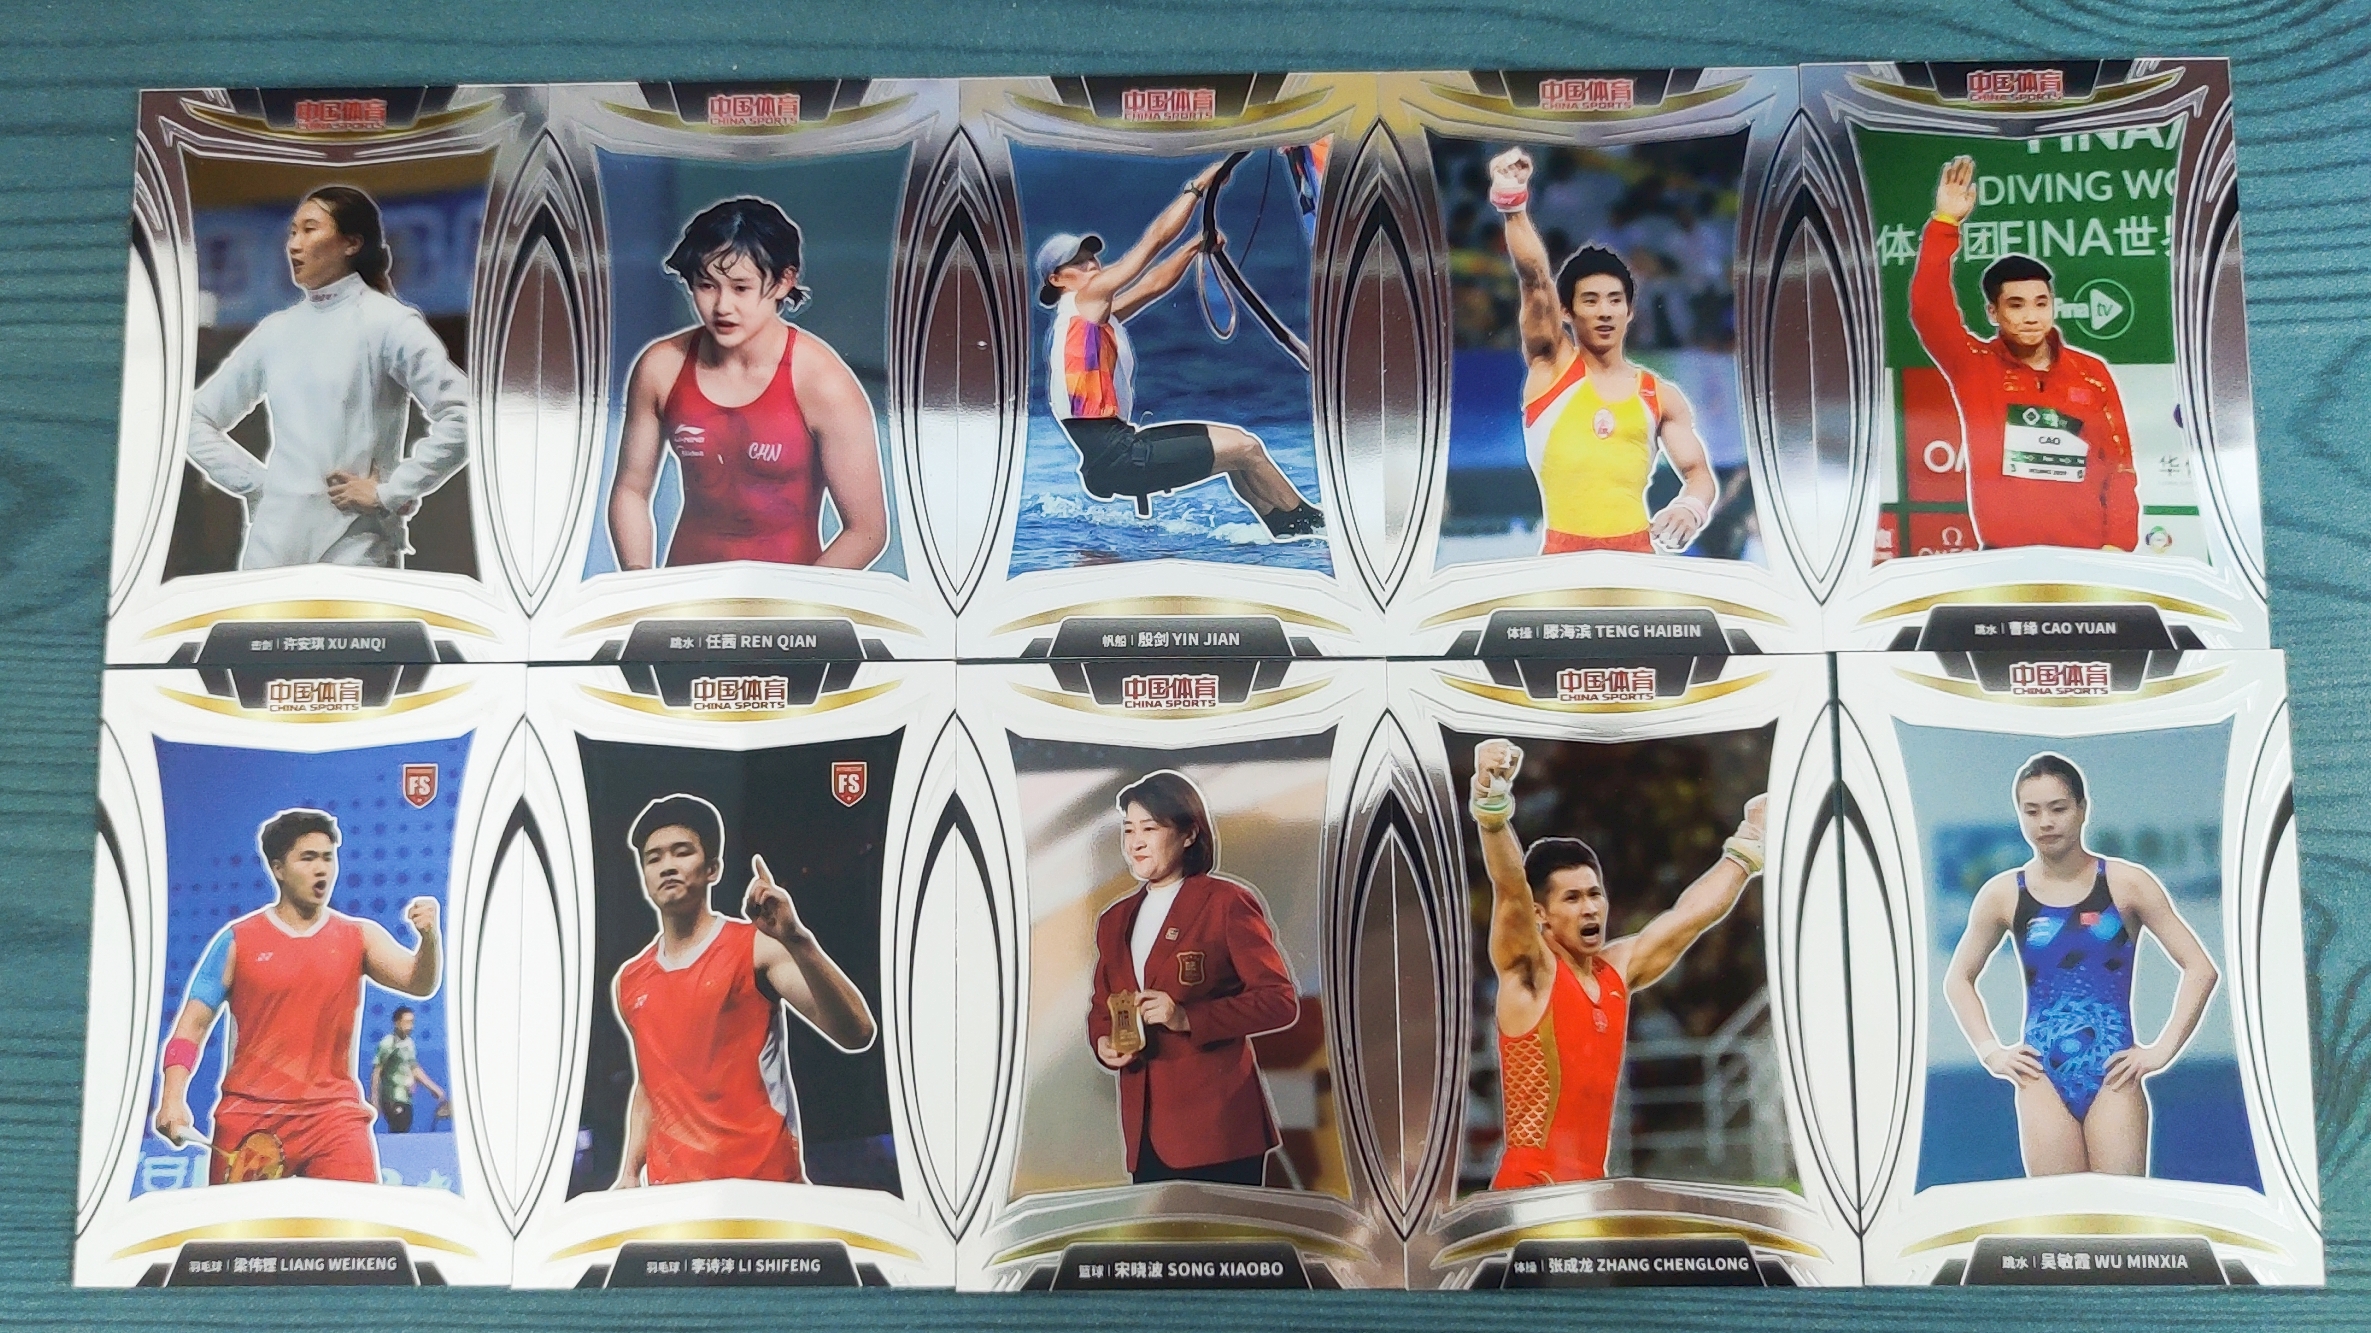 中国体育 凌云 选手 十张 base 珍藏系列 卡品如图